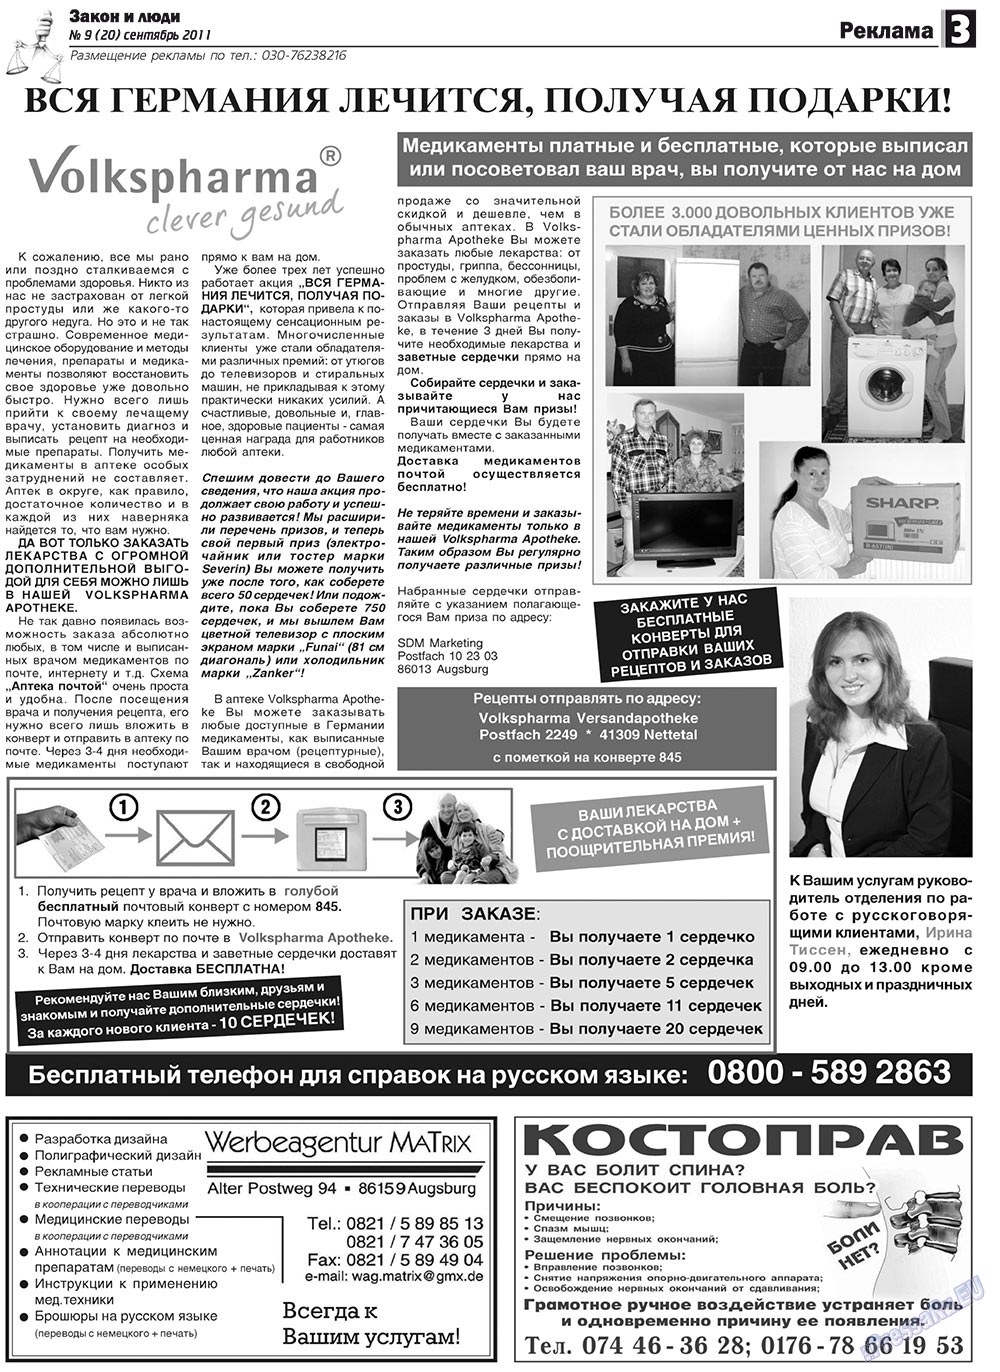 Закон и люди, газета. 2011 №9 стр.3